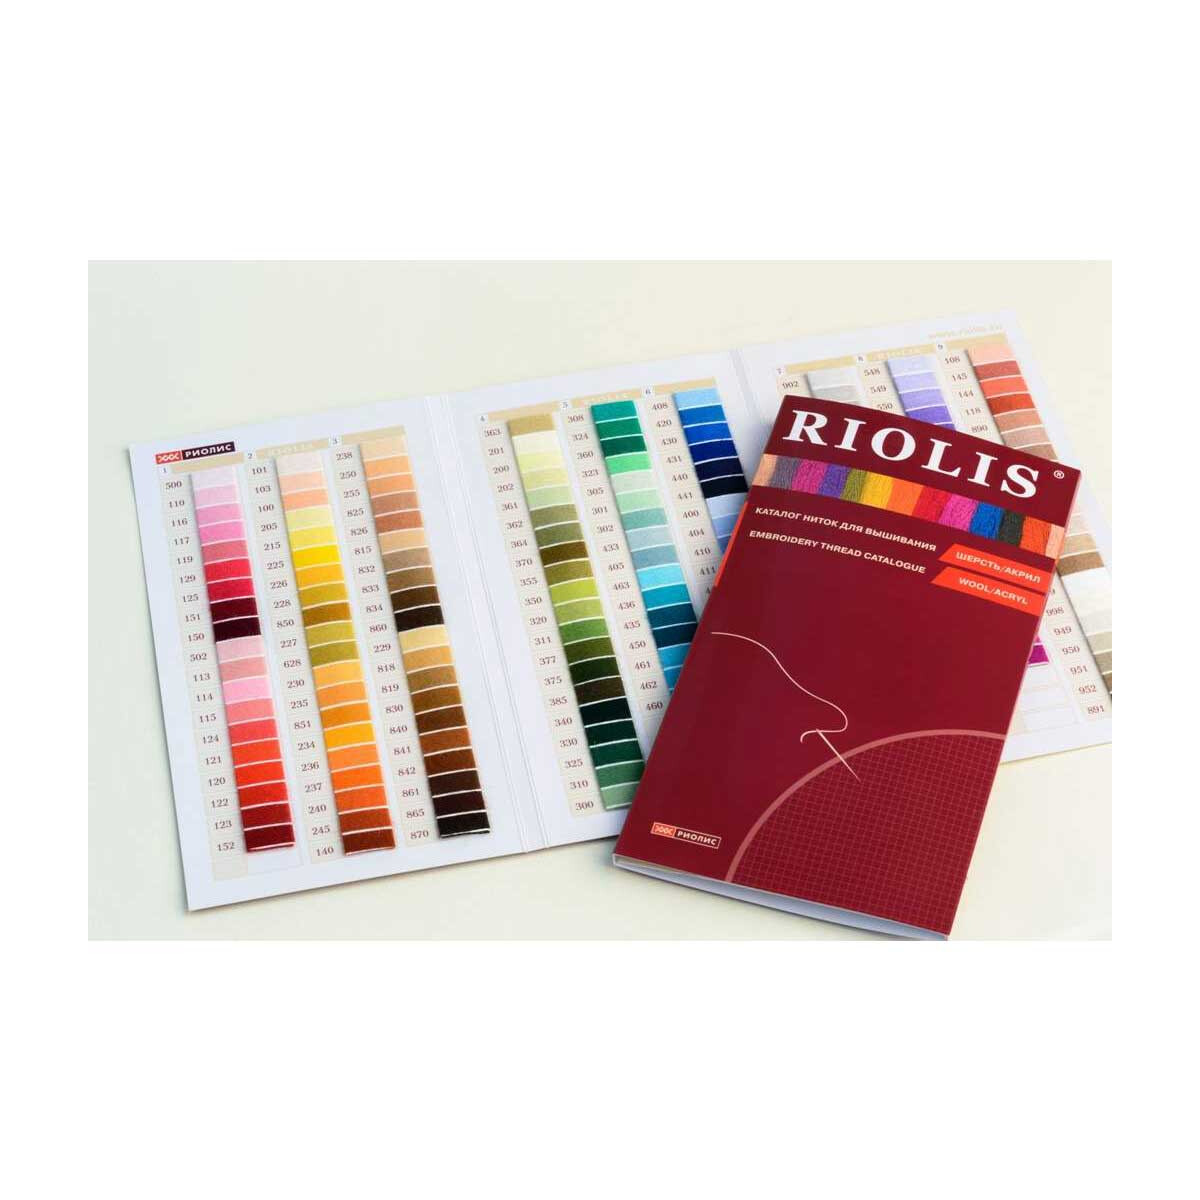 Riolis ricamo filo di ricamo a colori scheda catalogo